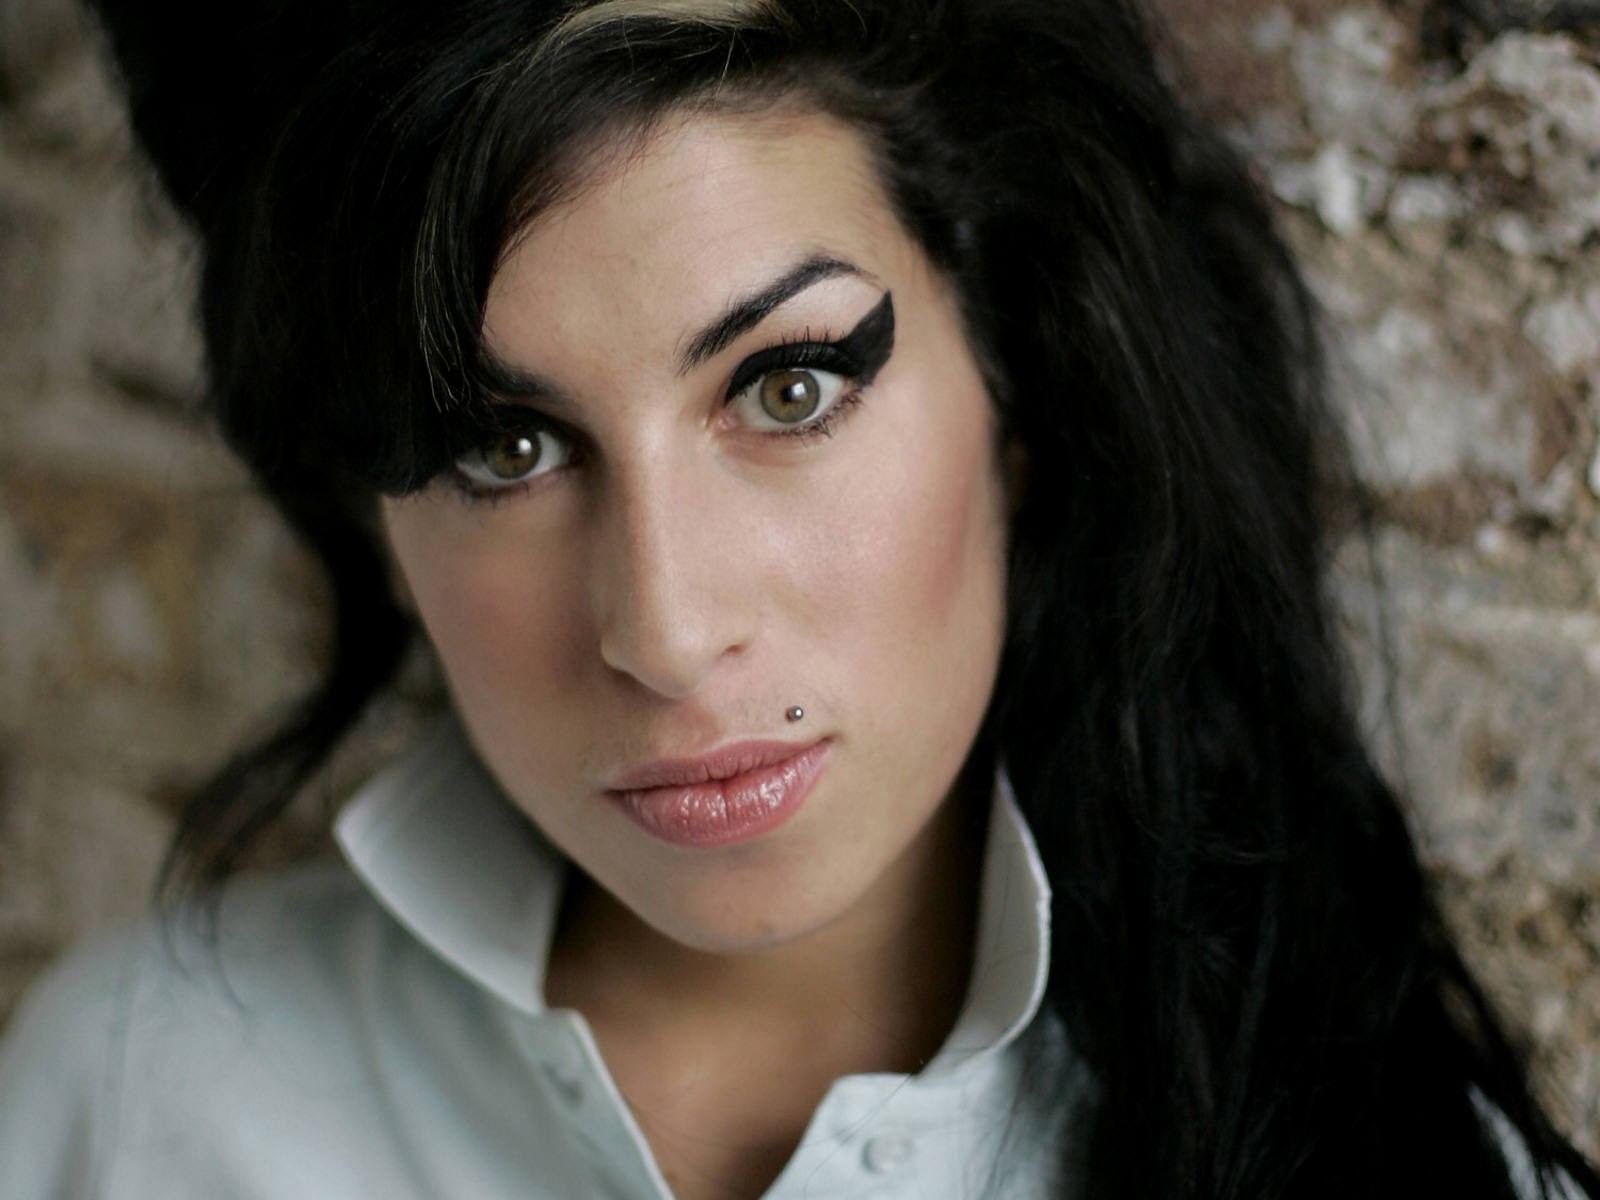 People 1600x1200 Amy Winehouse singer women face eyeliner black hair looking at viewer closeup deceased